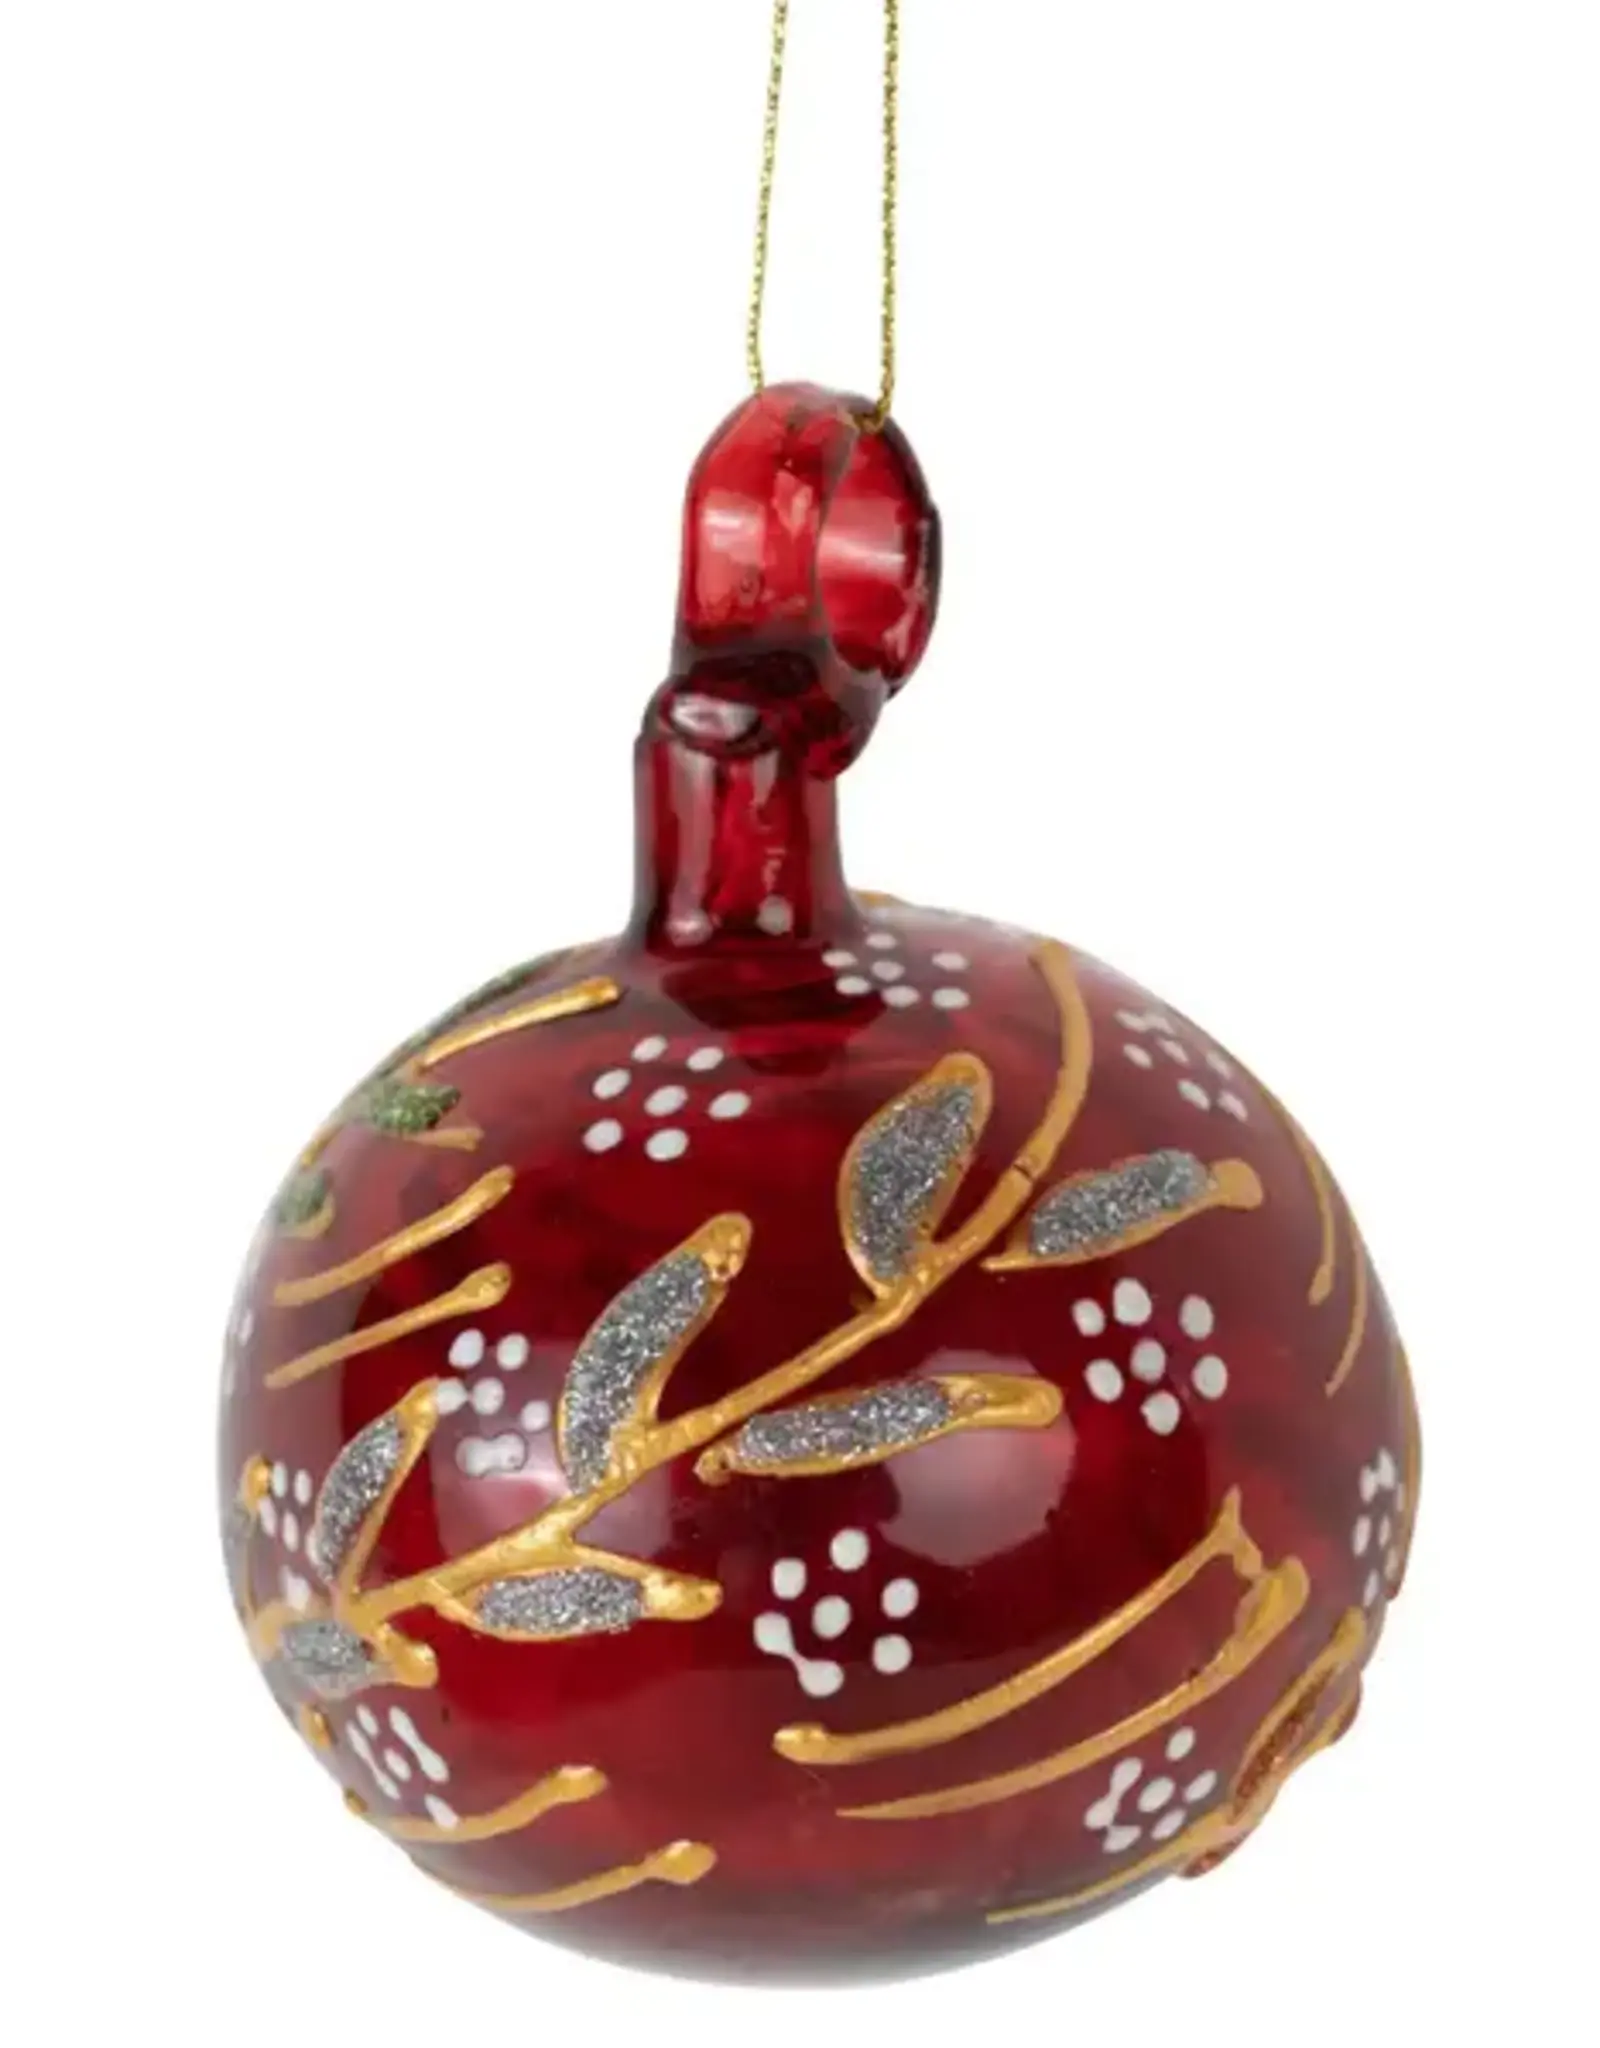 West Bank Firelight Glass Bulb Ornament - West Bank